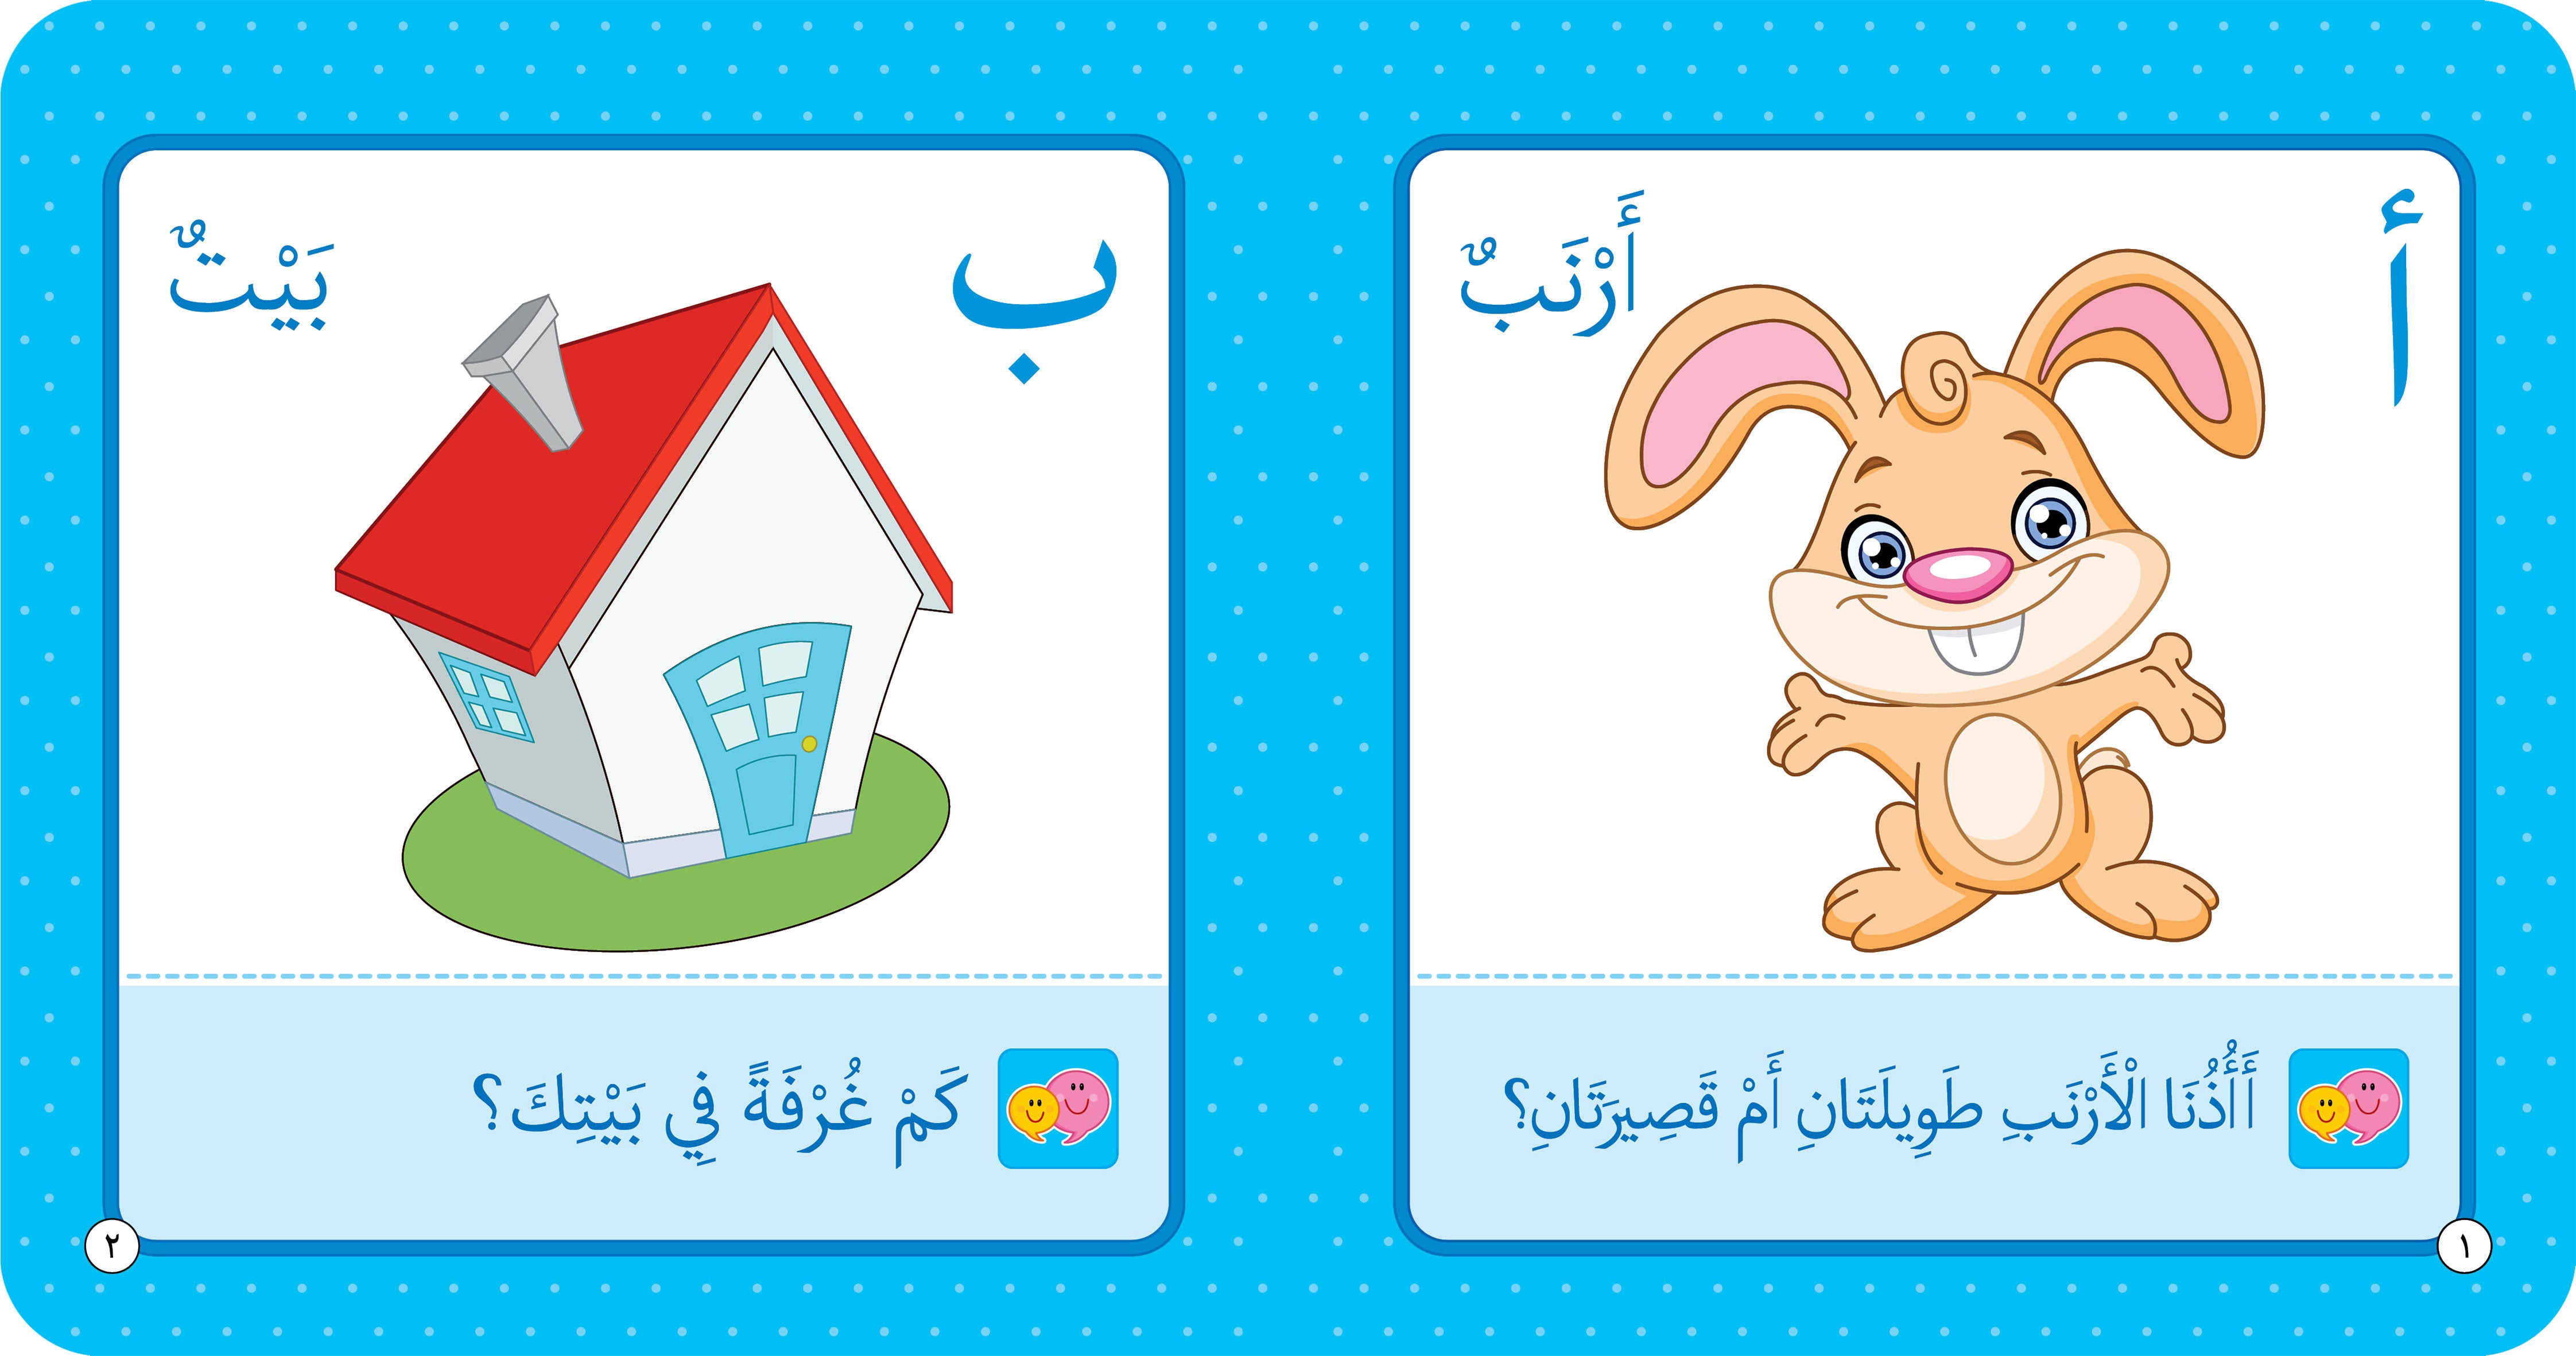 الحروف الأبجدية - كتاب تعليمي للأطفال باللغة العربية